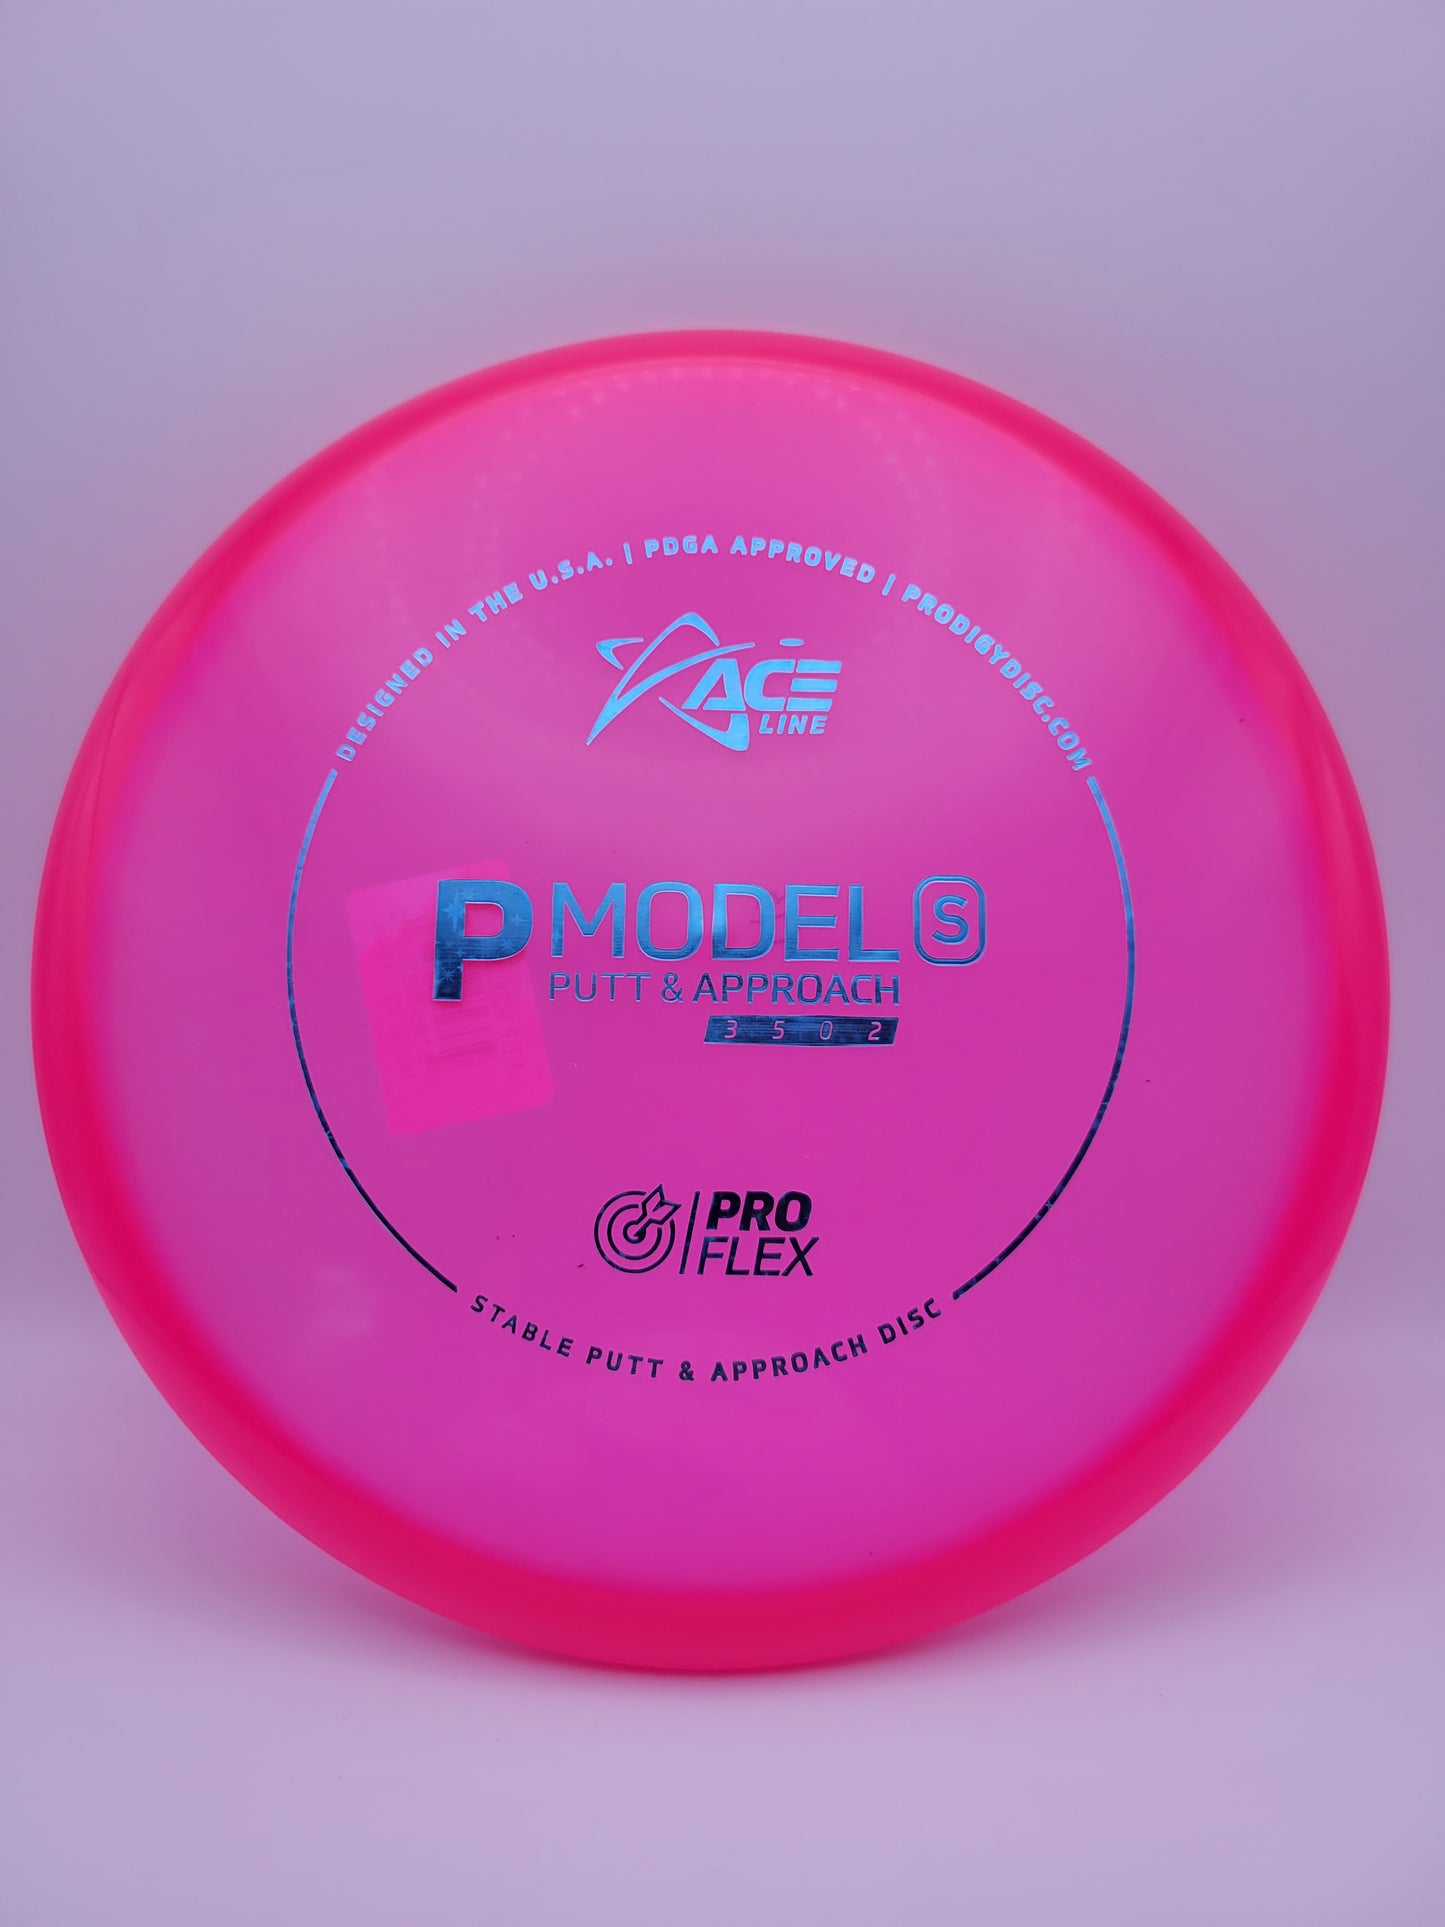 Prodigy ACE Line P Model S ProFlex Plastic